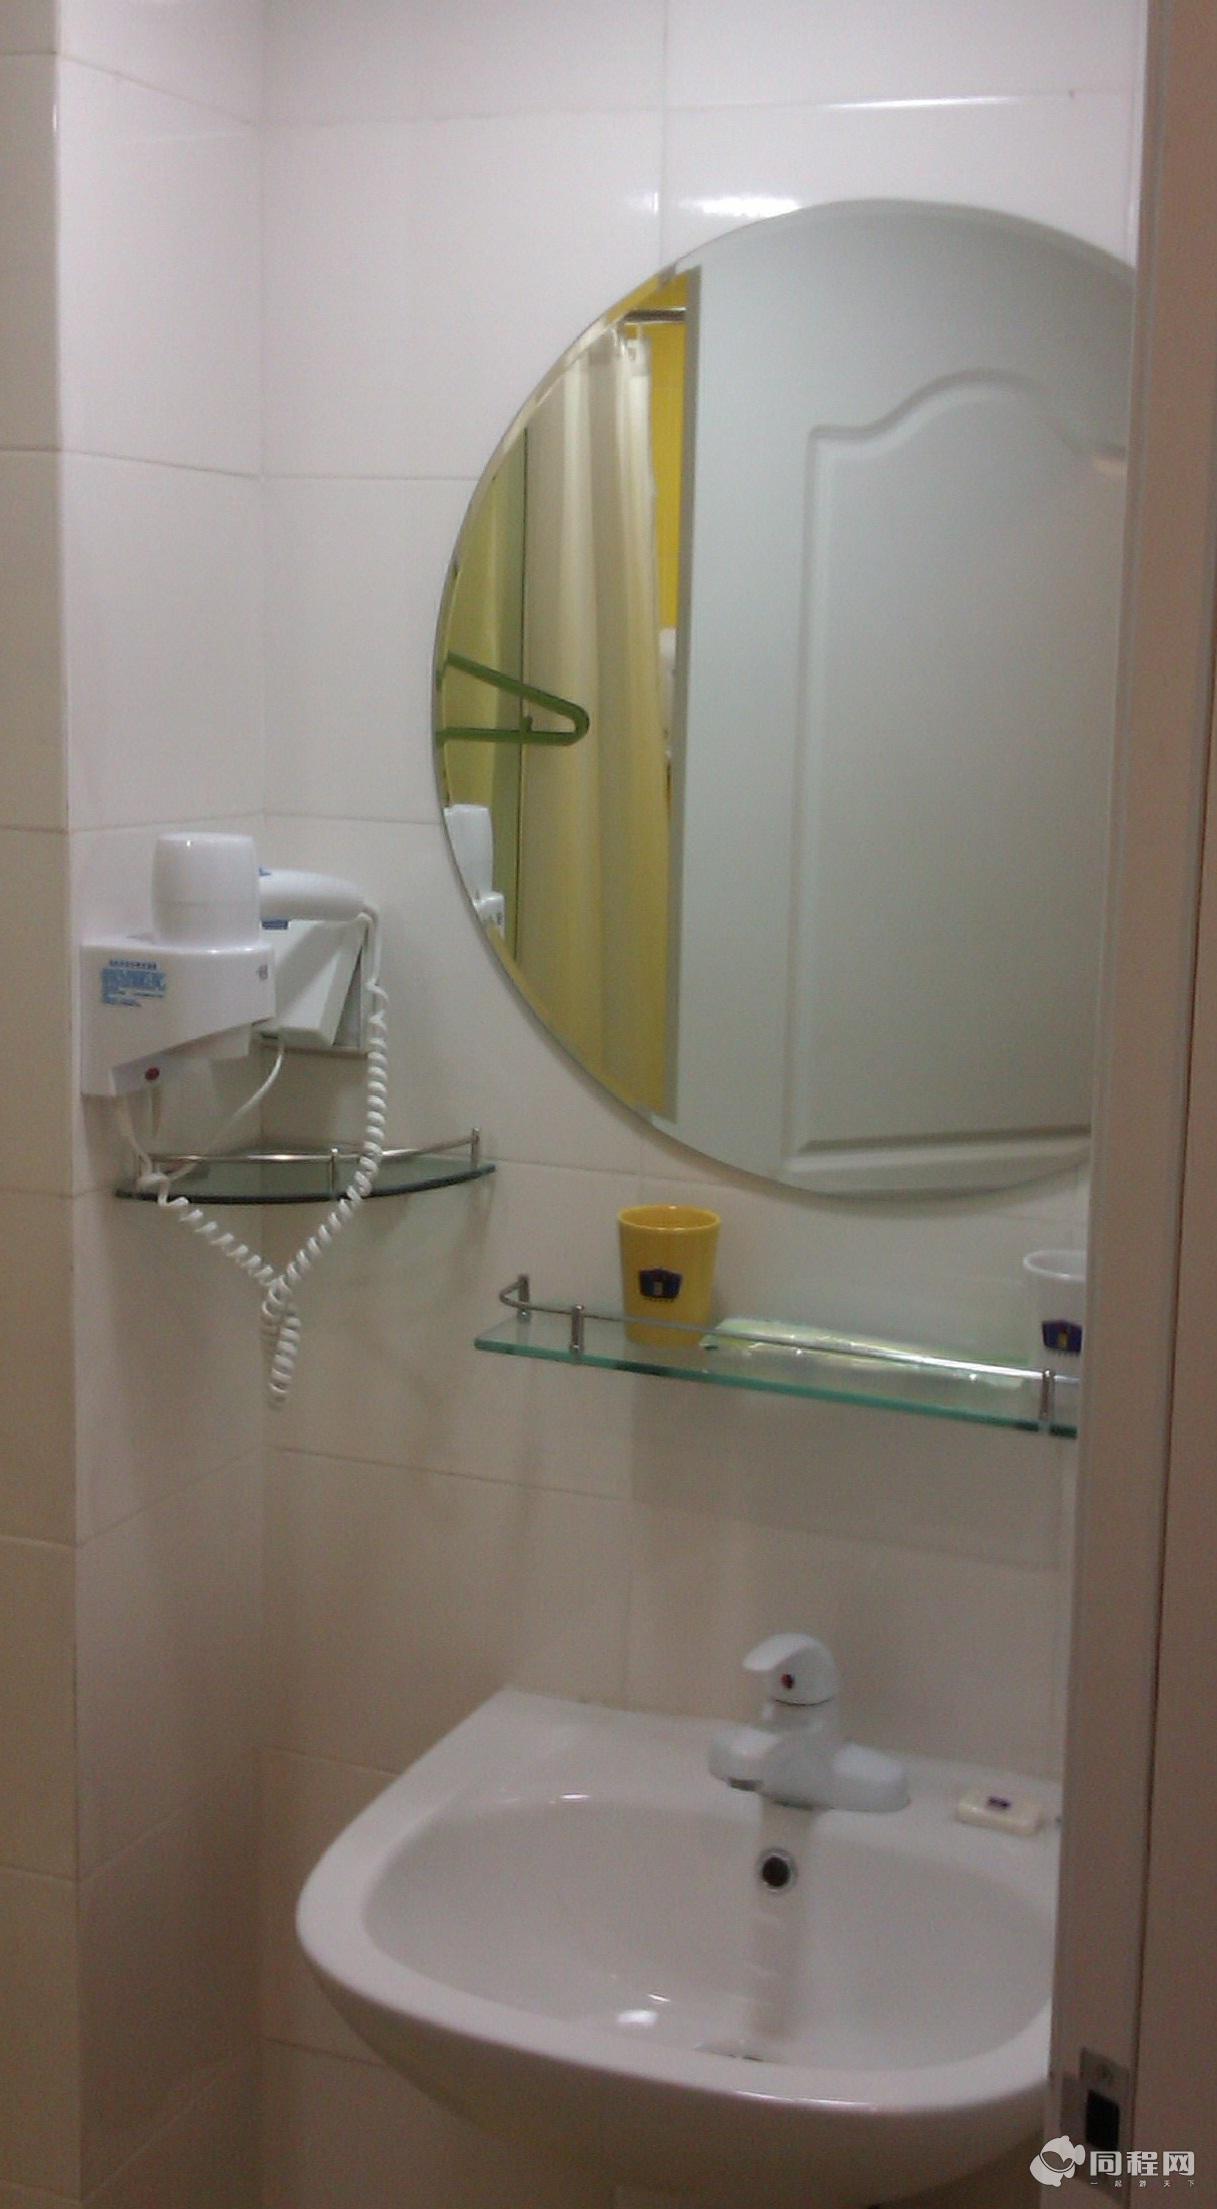 杭州如家快捷酒店（东新路工业品市场店）图片浴室[由15221swpcpw提供]